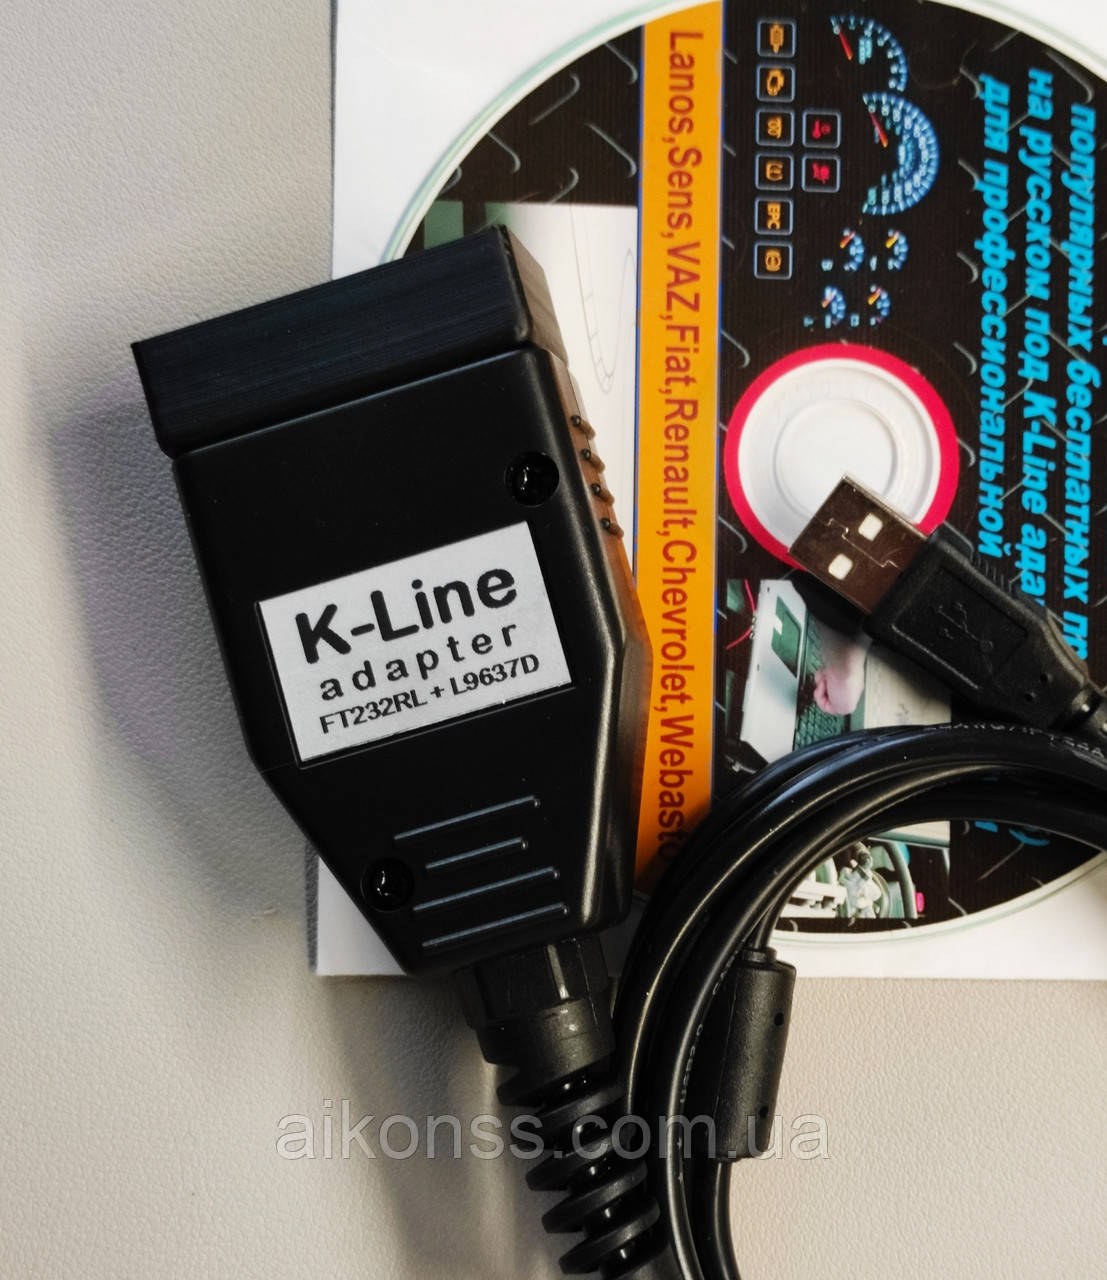 K-line (KKL) адаптер